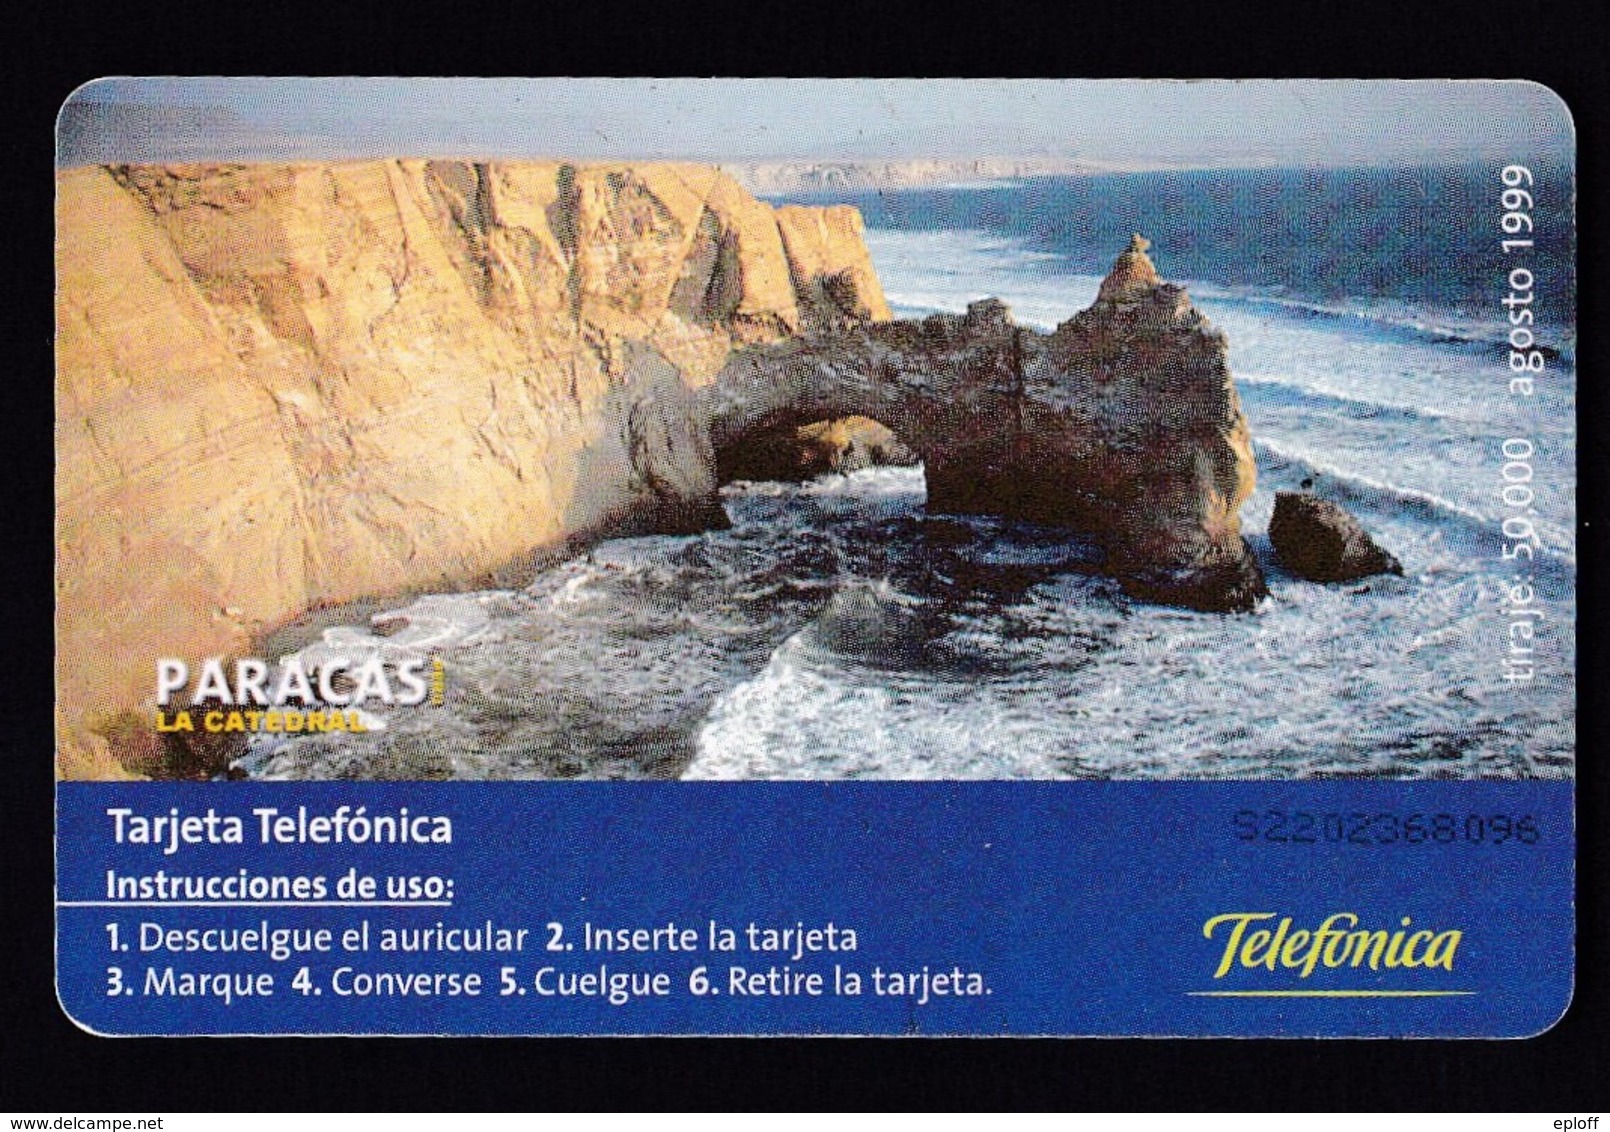 Pérou  Péru Telefonica   Télécarte à Puce    "Paracas Zarcillos"  "la Catédral" De 08.1999   Tirage 50 000 Exemplaires - Peru